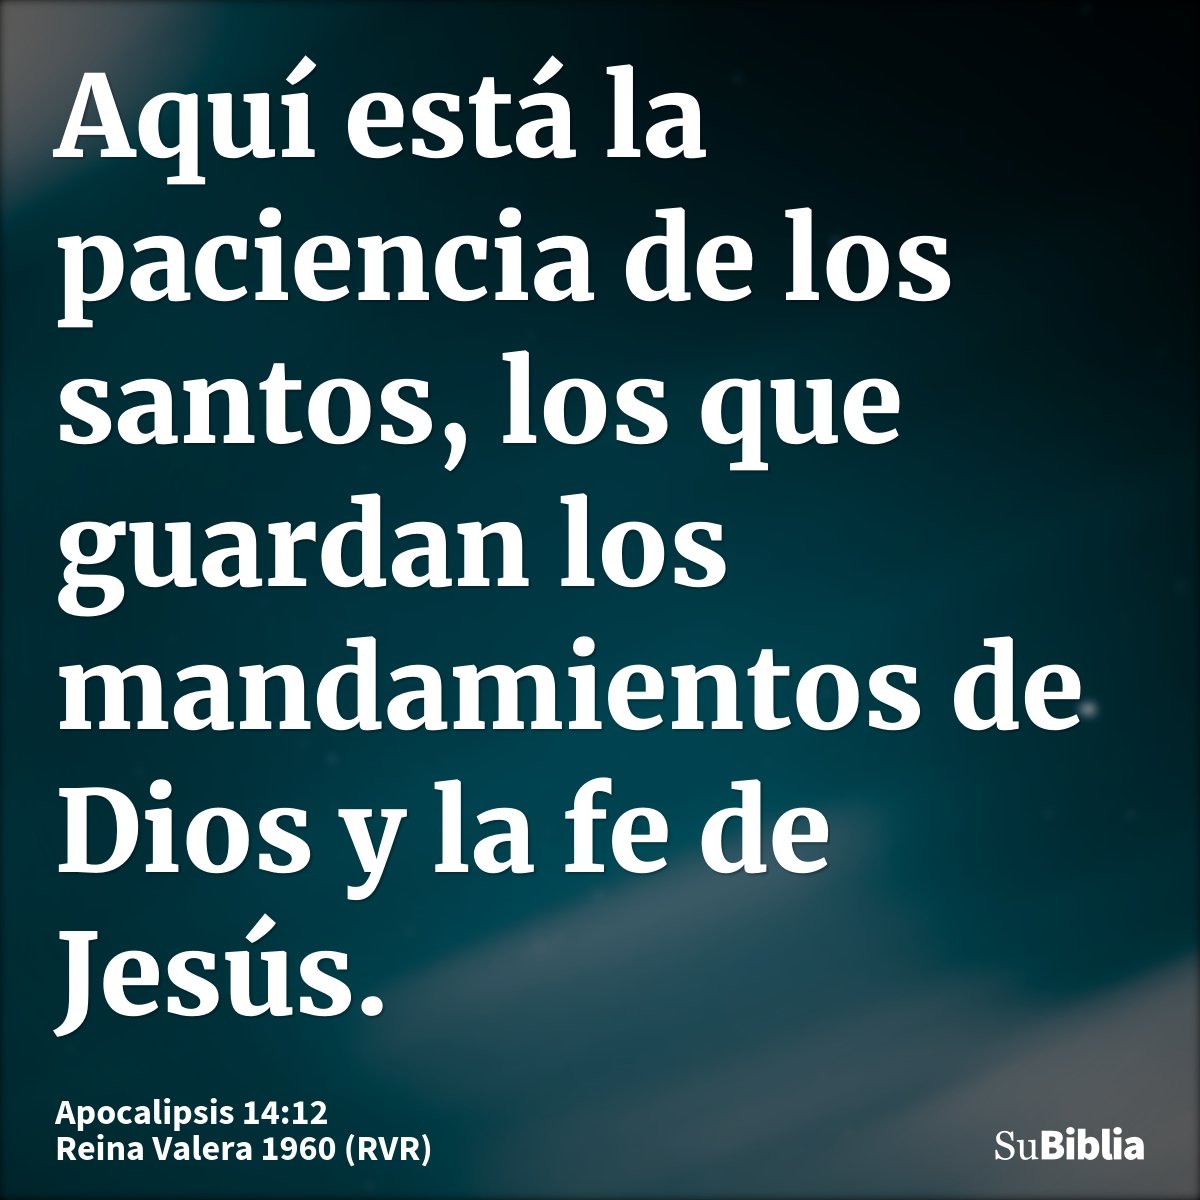 Aquí está la paciencia de los santos, los que guardan los mandamientos de Dios y la fe de Jesús.